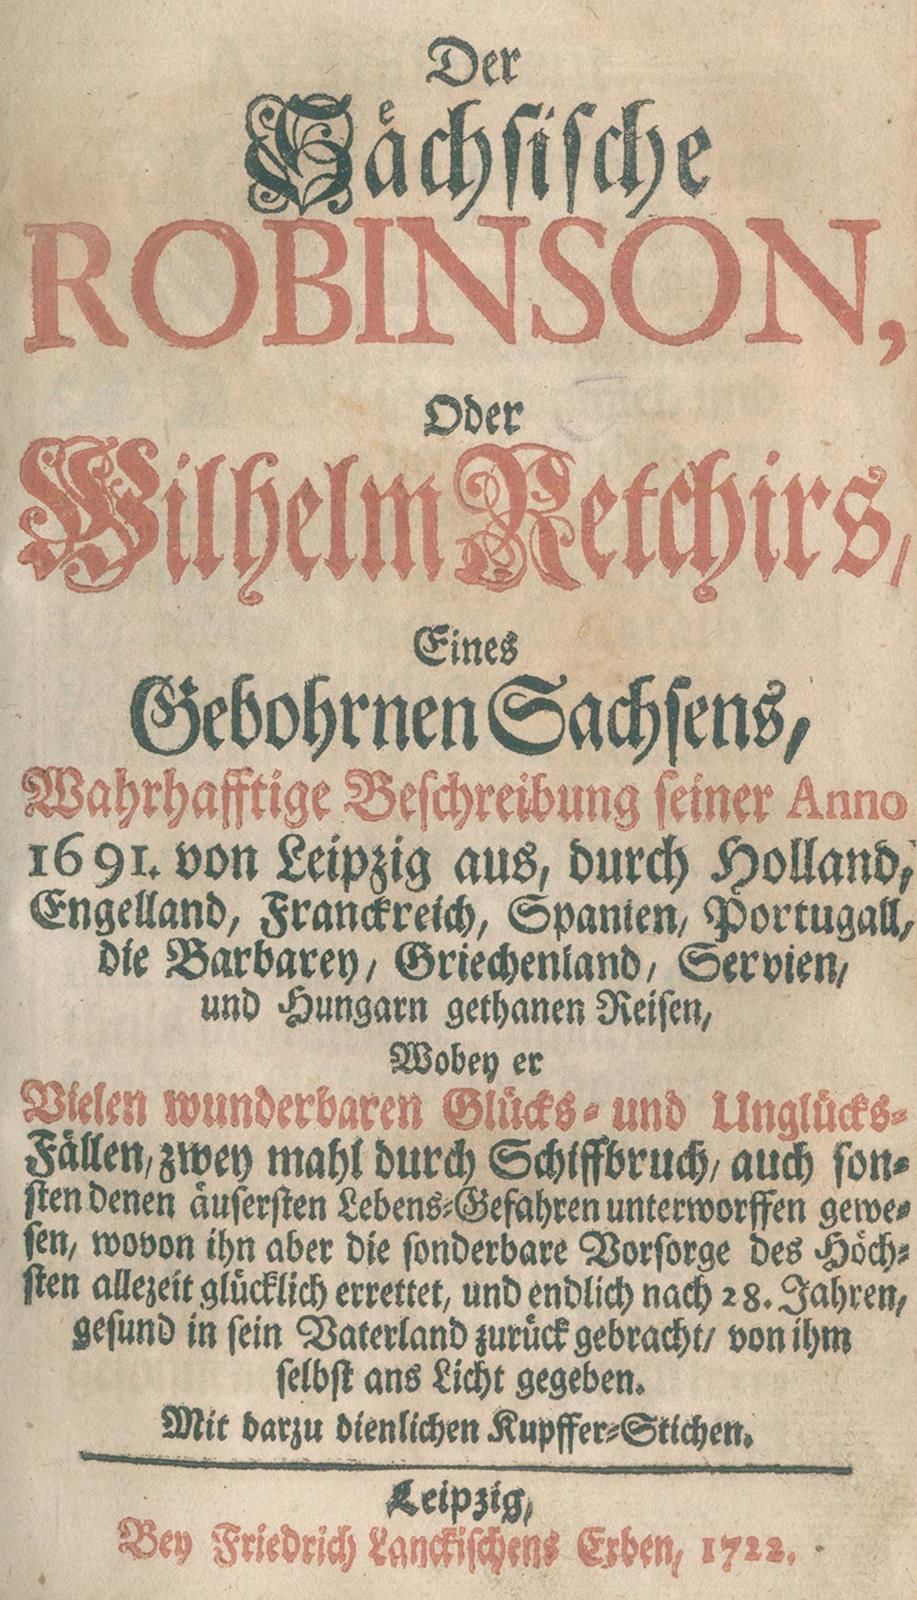 Sächsische Robinson, Der, o di Wilhelm Retchir, un sassone di nascita, descrizio&hellip;